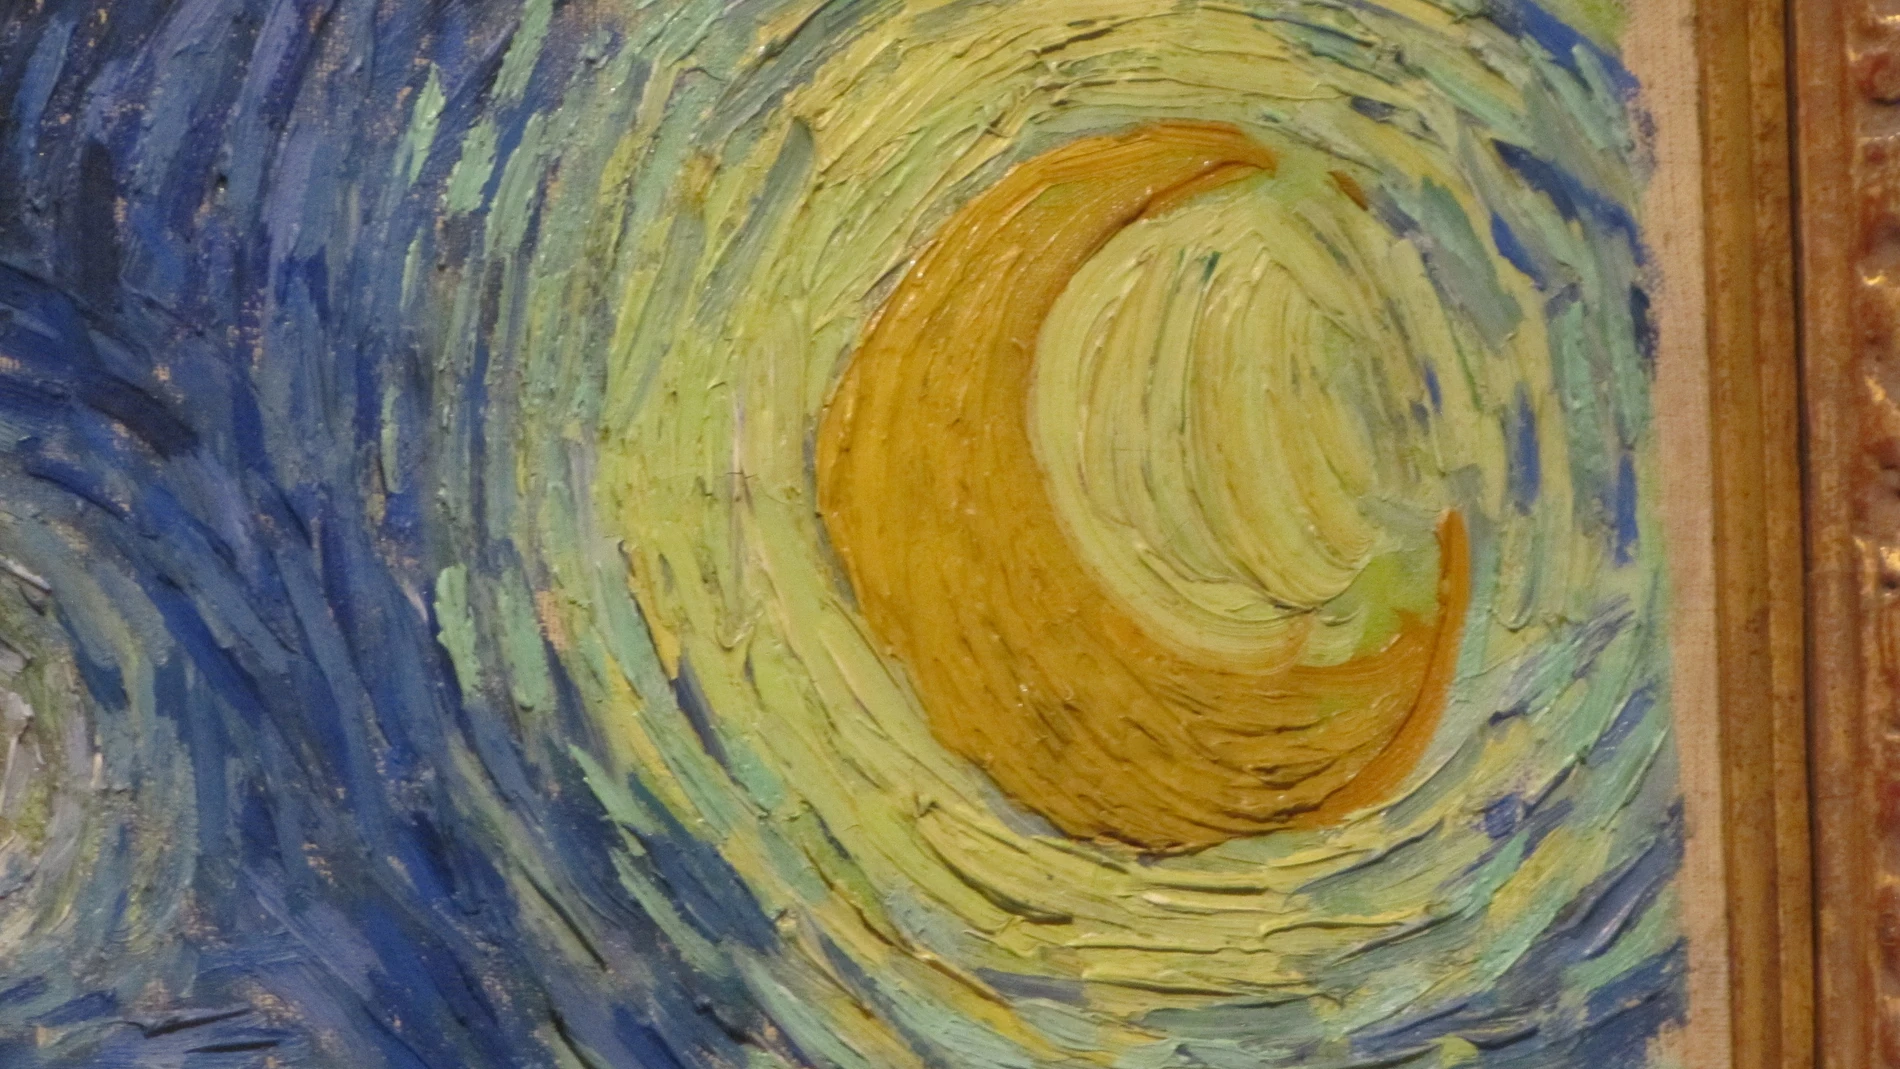 Detalle del cuadro Noche Estrellada de Vicent Van Gogh. La luna esta pintada con Amarillo de Calcuta.